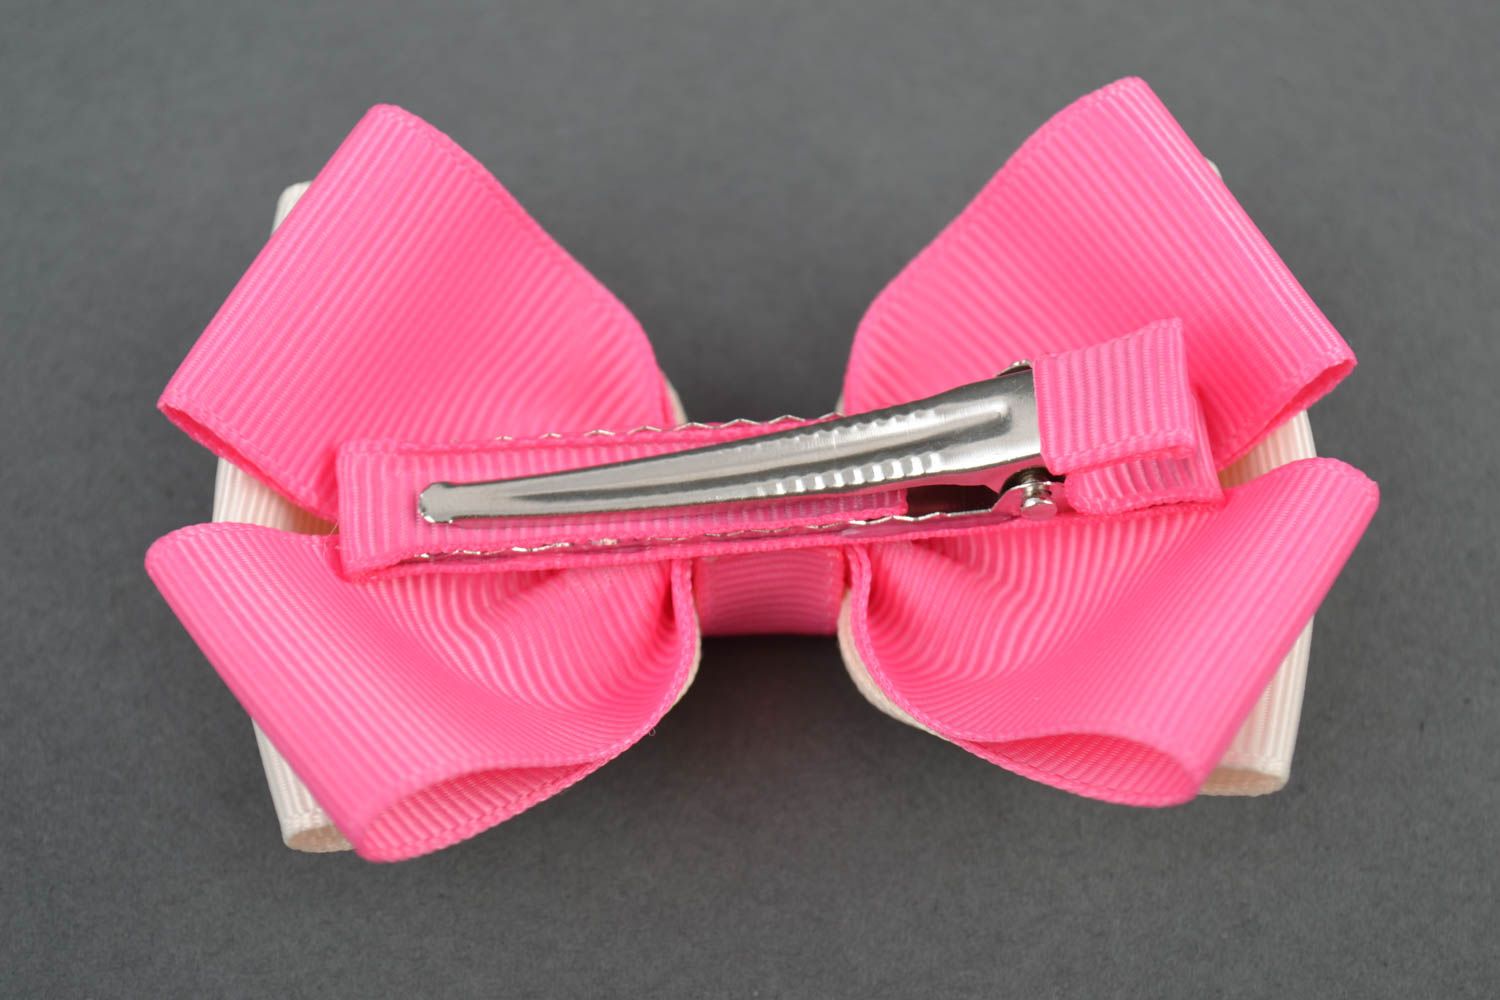 Hair accessories for women handmade hair clip hair bows gift ideas for girls photo 2